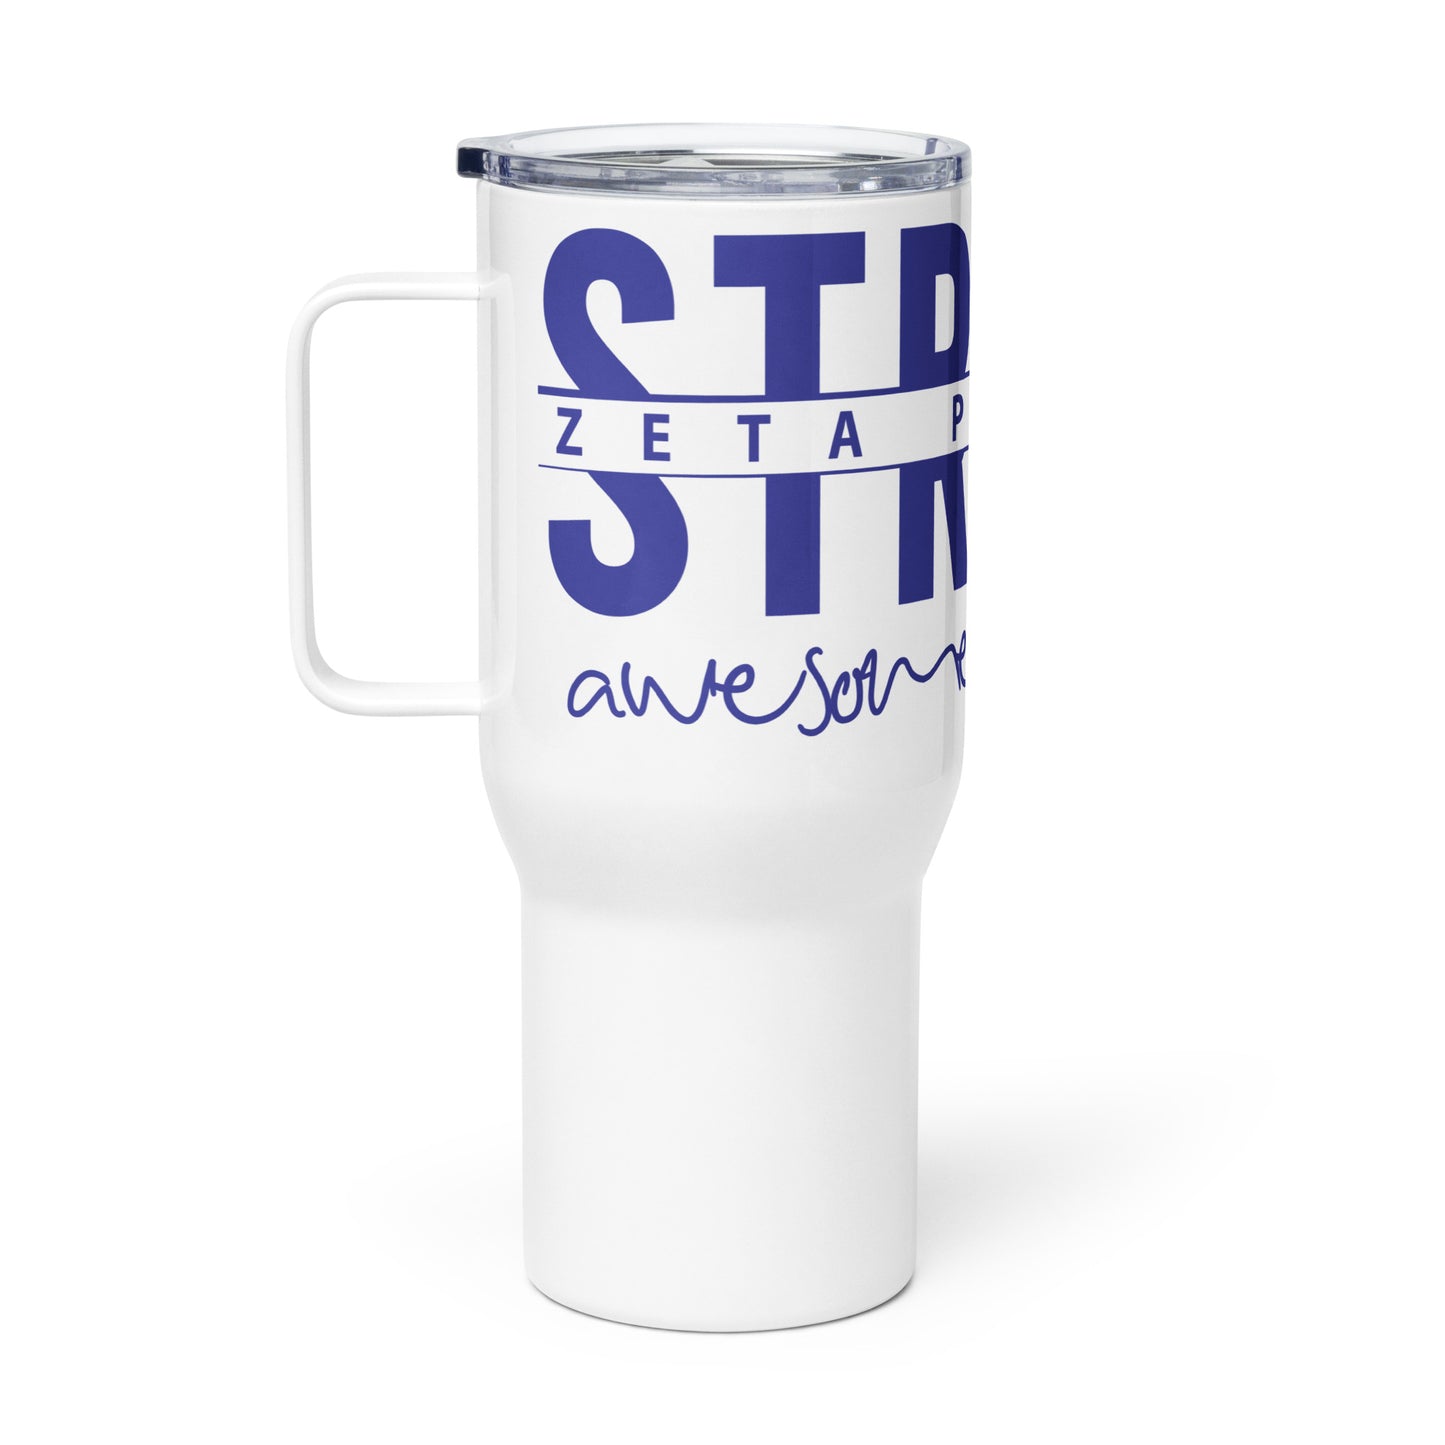 ZETA MOM STRONG Travel mug with a handle